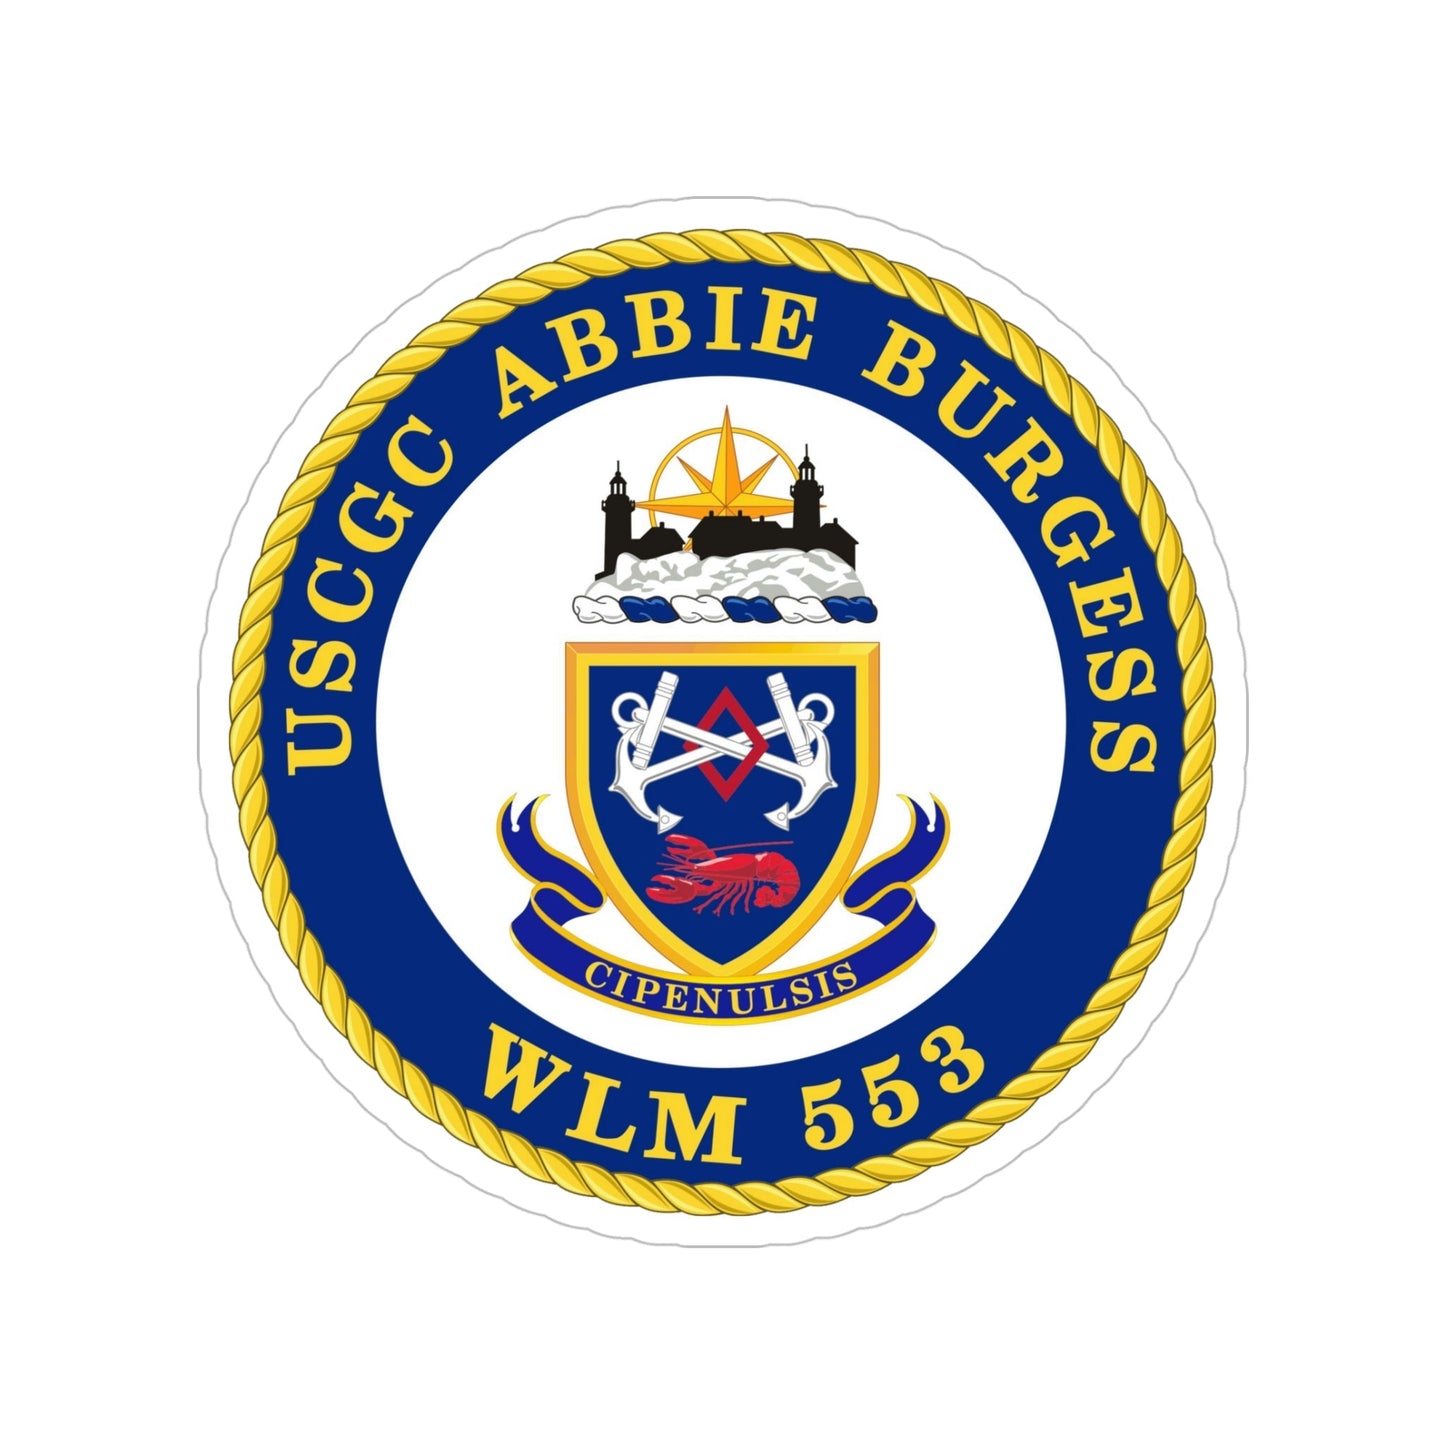 USCGC Abbie Burgess WLM 553 (U.S. Coast Guard) Transparent STICKER Die-Cut Vinyl Decal-5 Inch-The Sticker Space